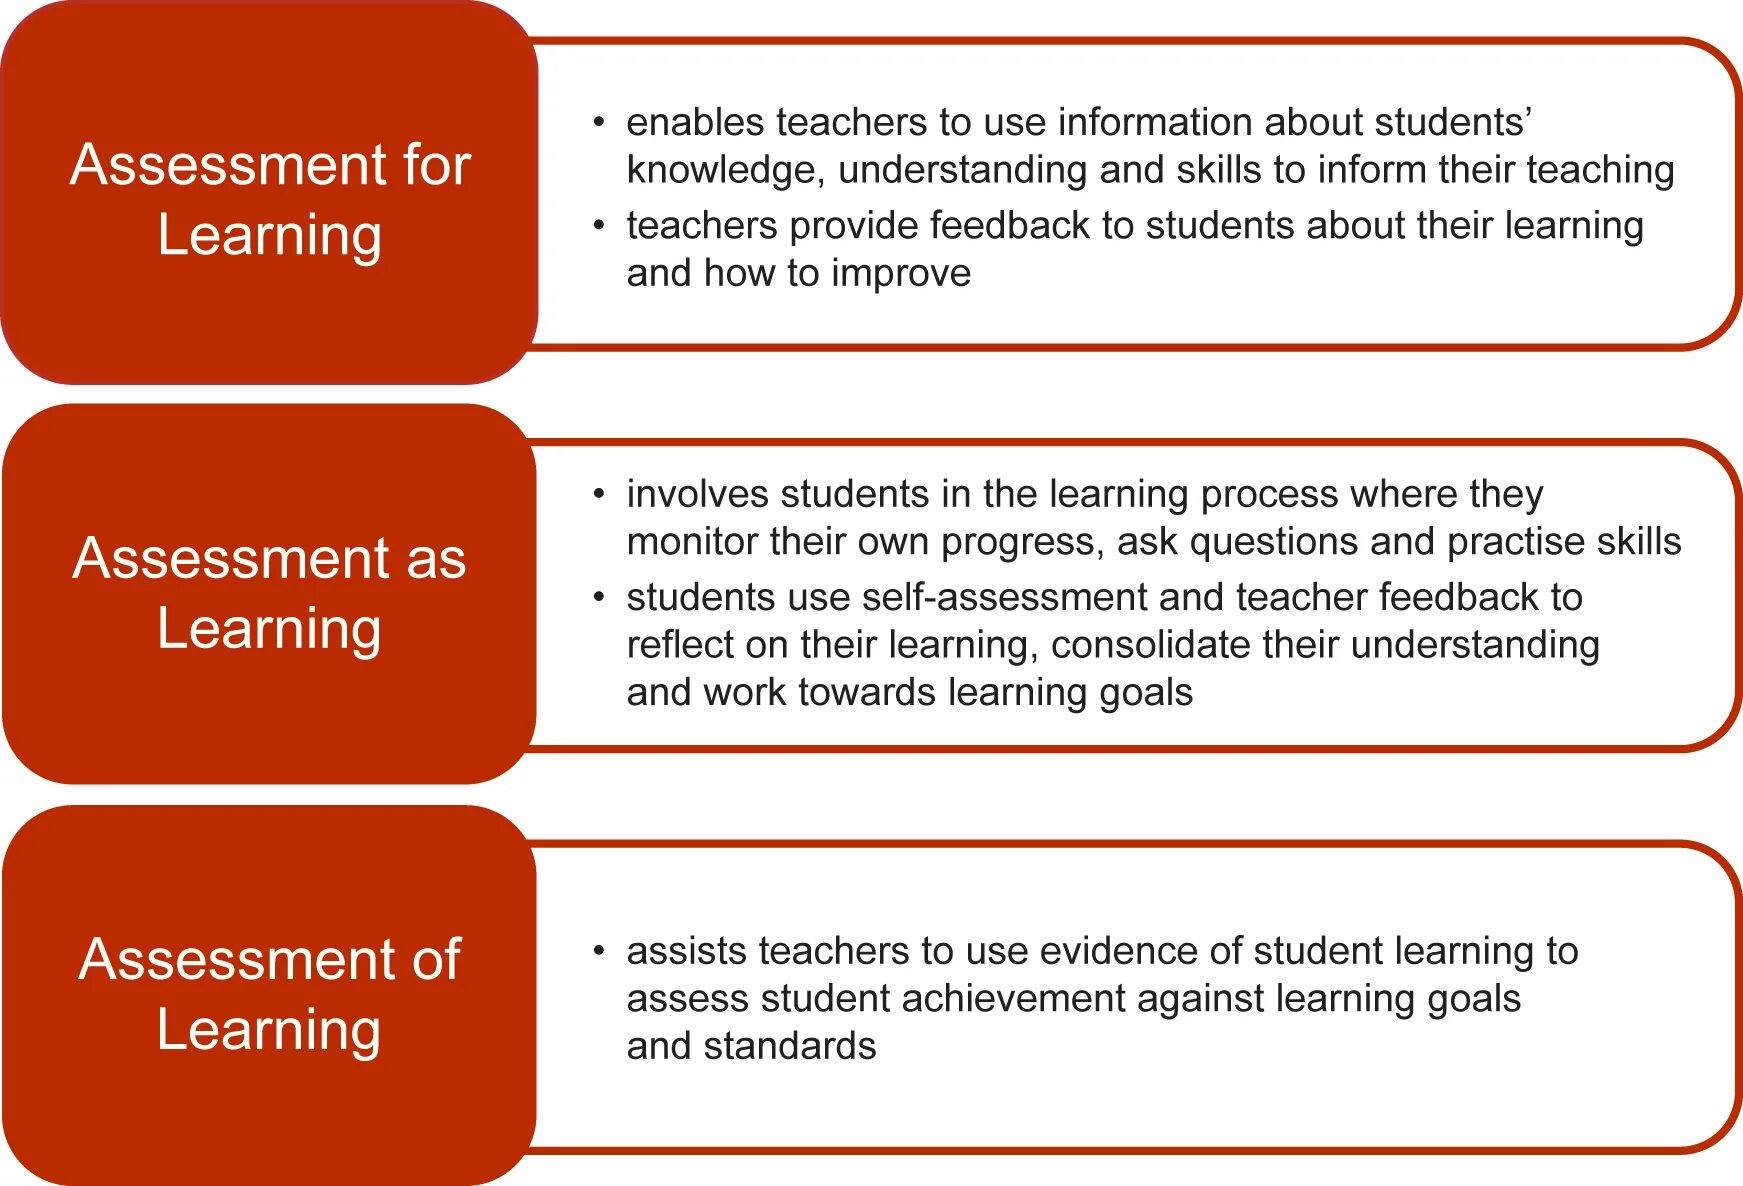 Assessment for Learning. Assessment of Learning and Assessment for Learning. Understanding Assessment for Learning. Assessment . Types of Assessment. Is teacher understanding